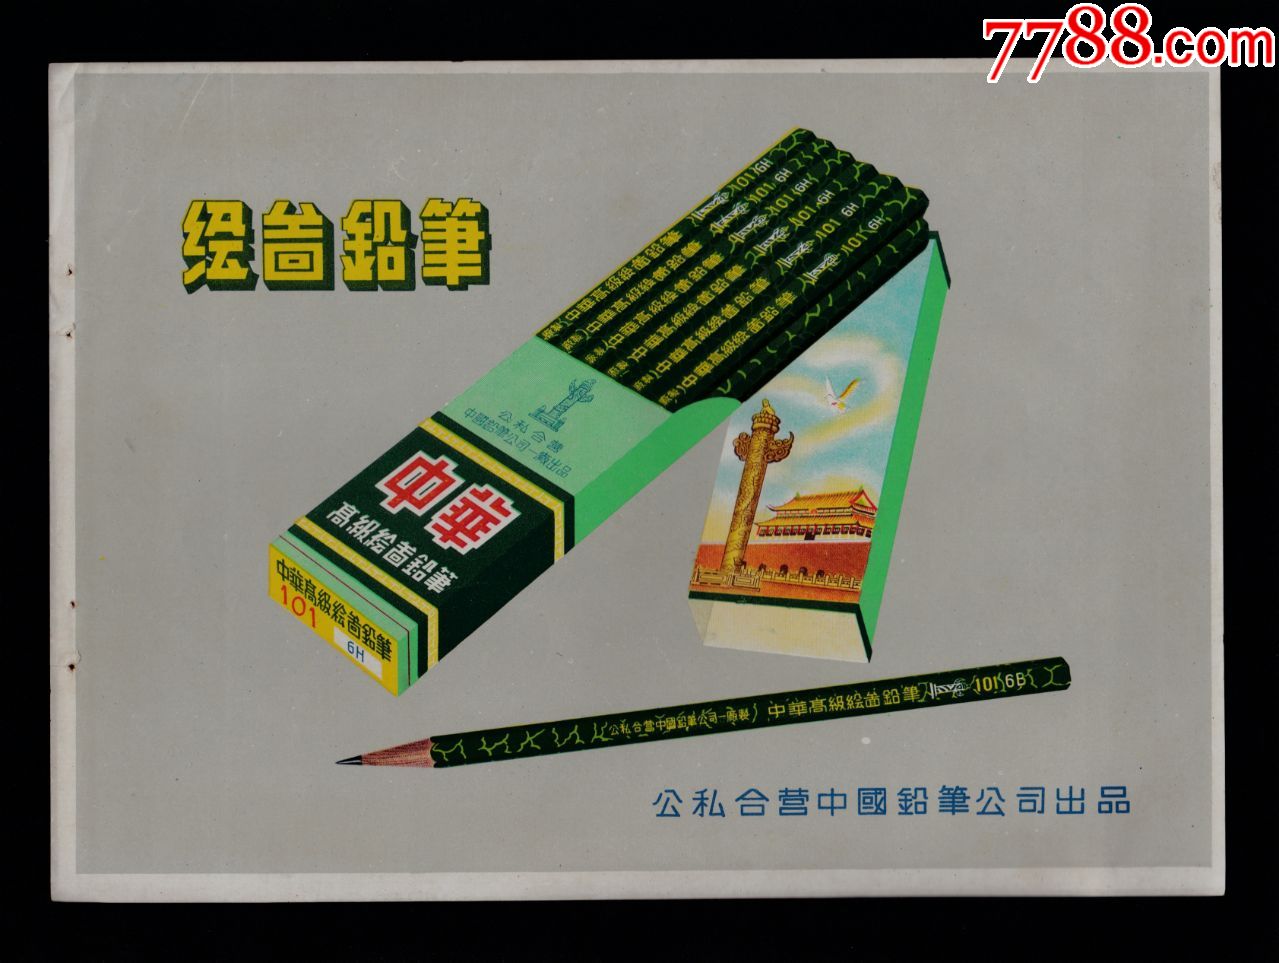 【公私合营中国铅笔公司中华牌绘图铅笔广告】